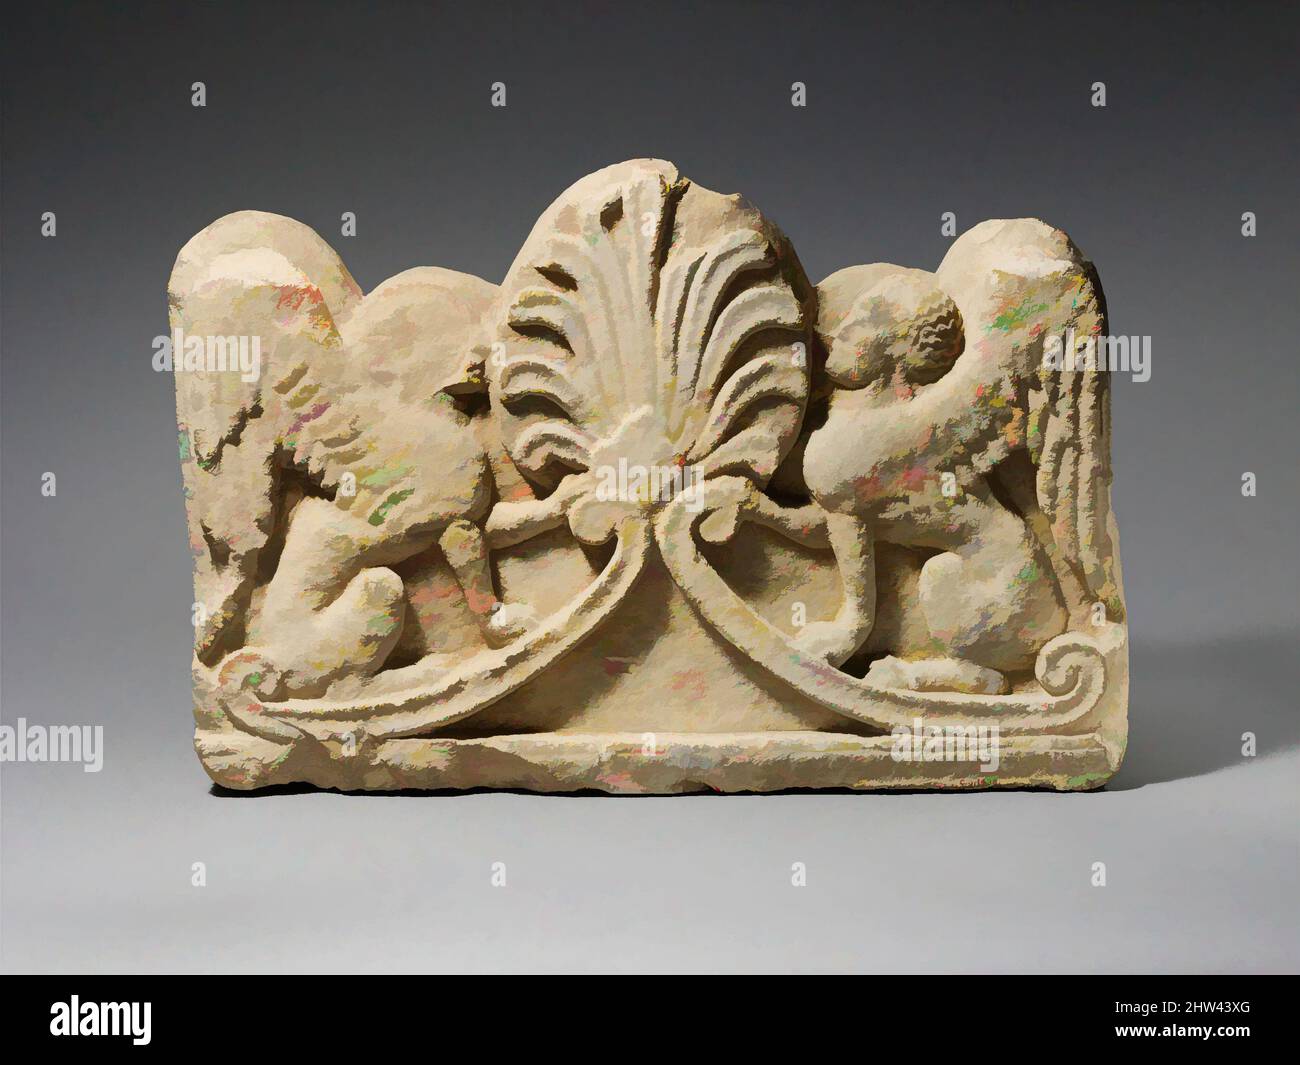 Art inspiré par Limestone grave relief avec deux sphinx, Cypro-classique, fin du 5th siècle avant J.-C., chypriote, calcaire, total: 18 1/2 x 27 x 8 1/2 po. (47 x 68,6 x 21,6 cm), Sculpture de pierre, le relief vient du sommet d'une stèle funéraire, sur laquelle les sphinx assis ont agi comme, oeuvres classiques modernisées par Artotop avec un peu de modernité. Formes, couleur et valeur, impact visuel accrocheur sur l'art émotions par la liberté d'œuvres d'art d'une manière contemporaine. Un message intemporel qui cherche une nouvelle direction créative. Artistes qui se tournent vers le support numérique et créent le NFT Artotop Banque D'Images